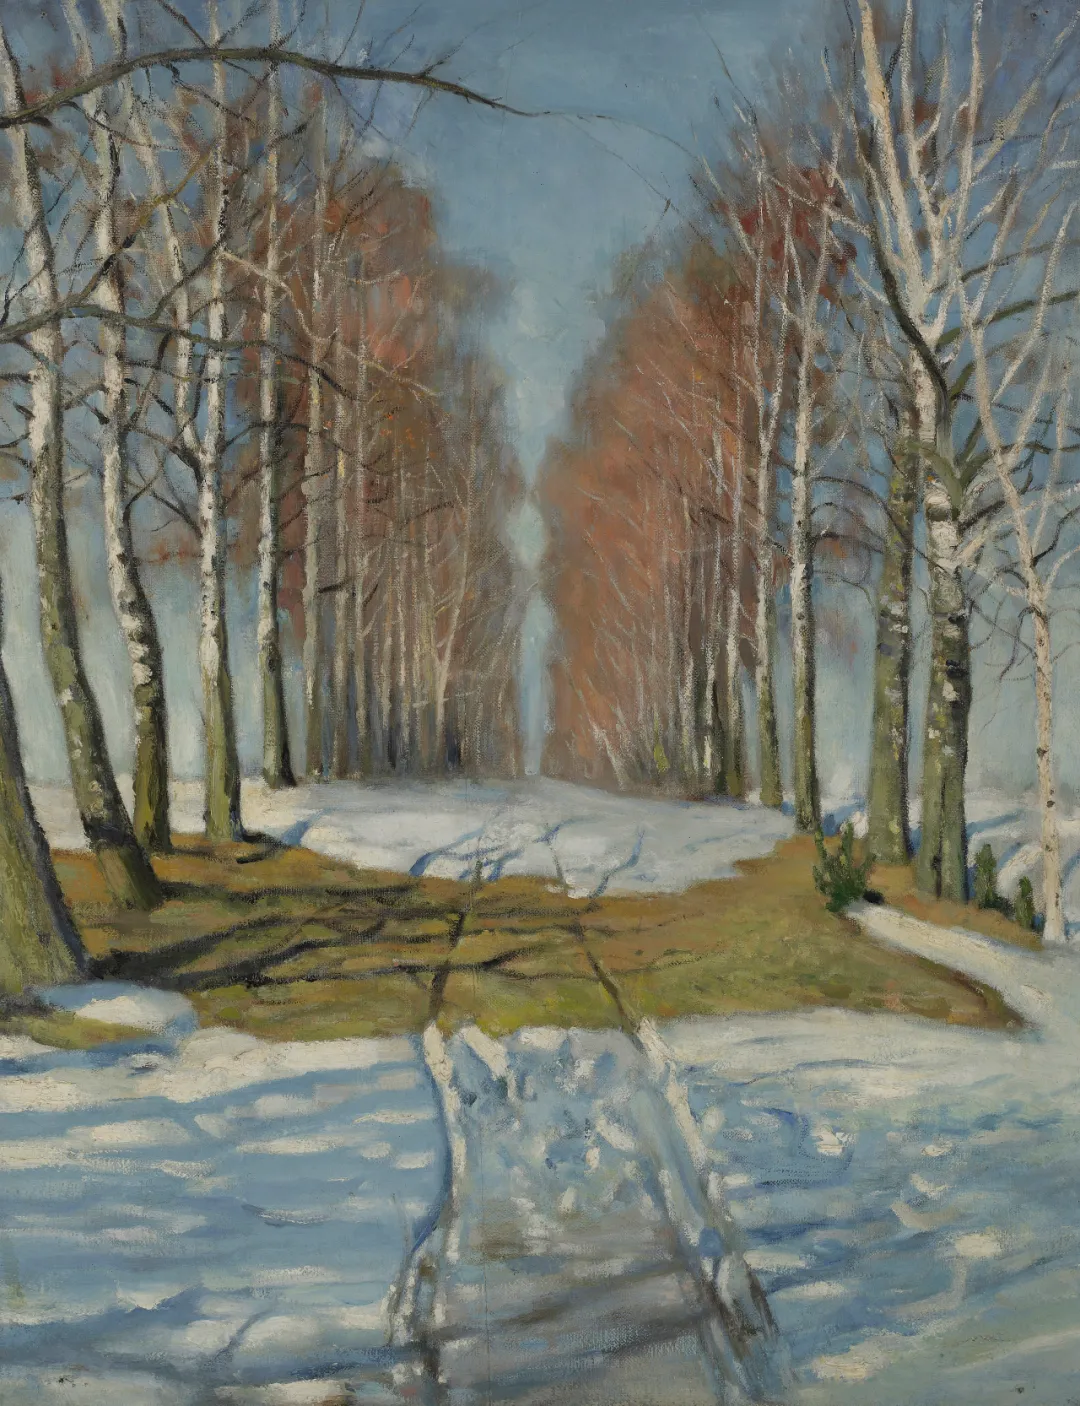 梁锡鸿临摹,白桦林荫道,875×67cm,布面油画,1956年